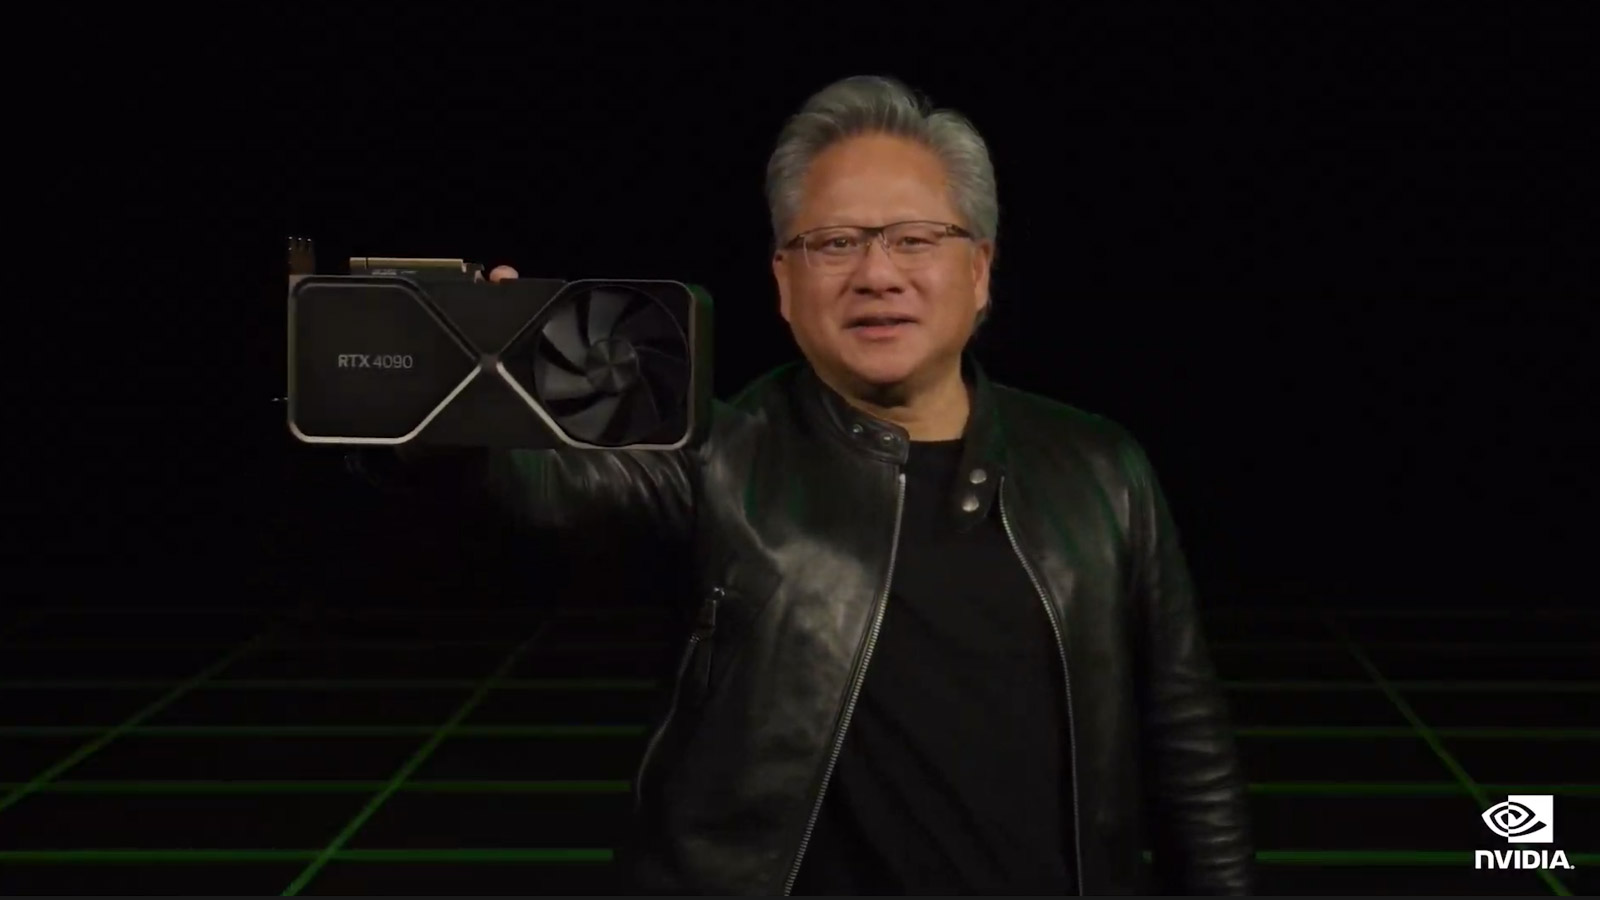 O CEO da Nvidia, Jensen Huang, com uma placa gráfica RTX 4090.